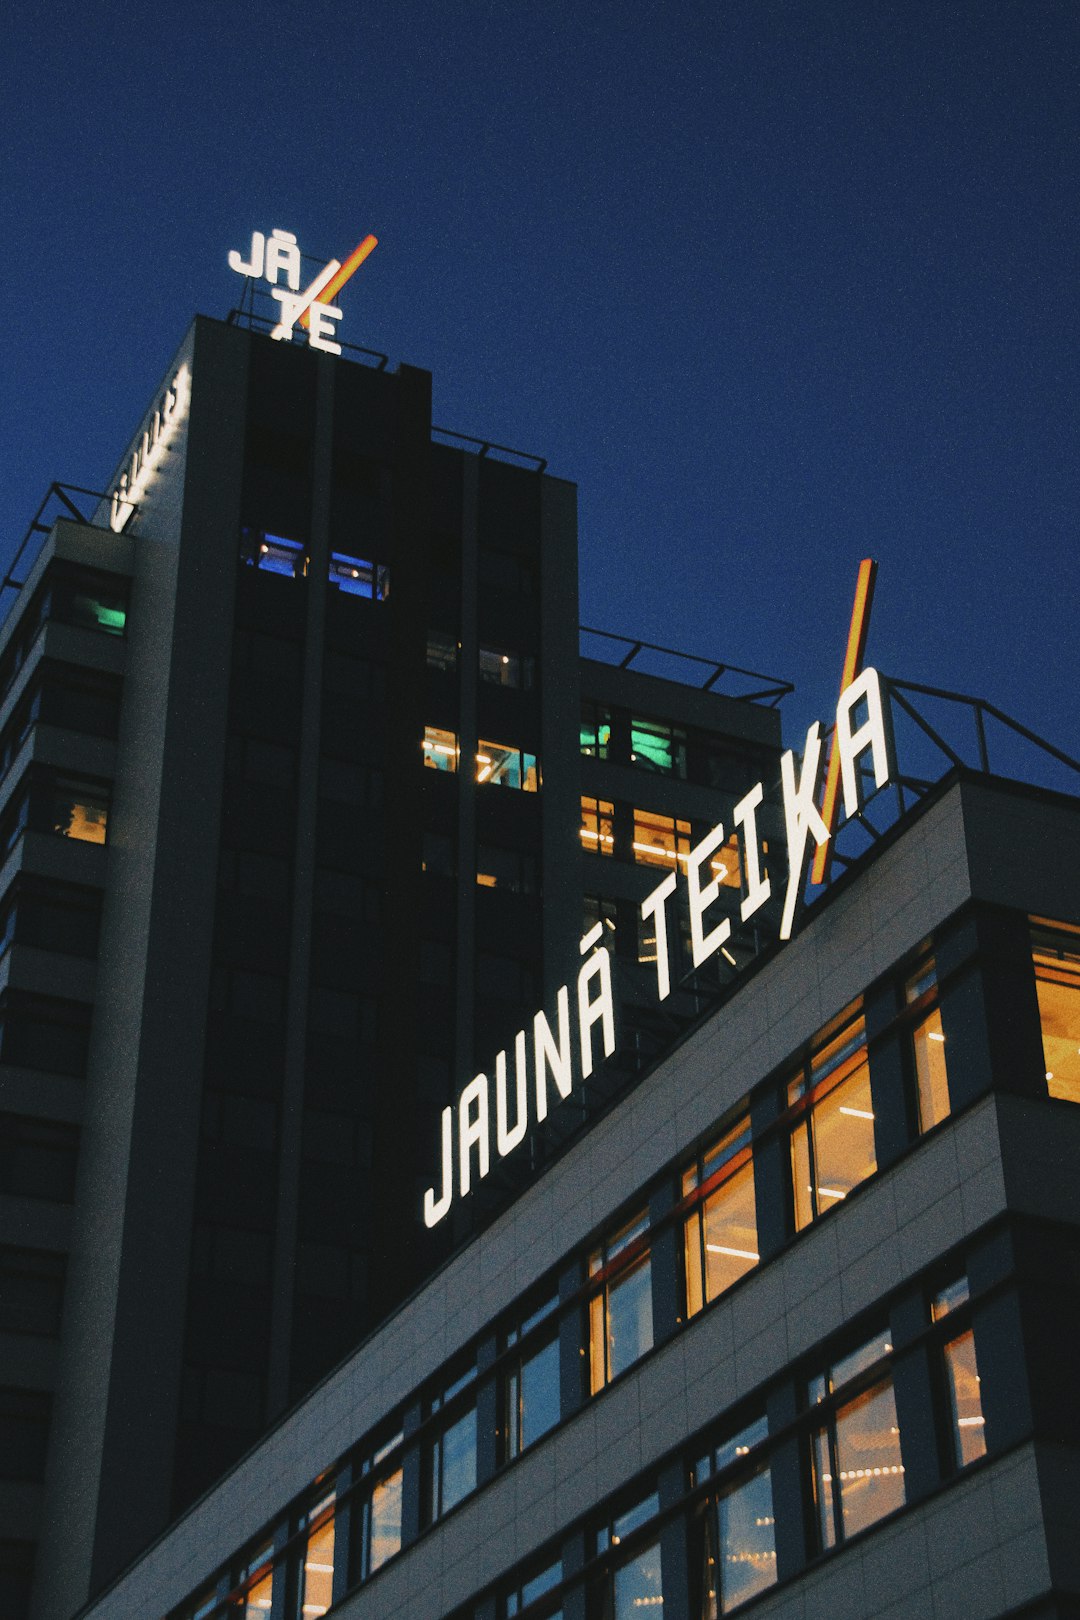 Jauna Teika building